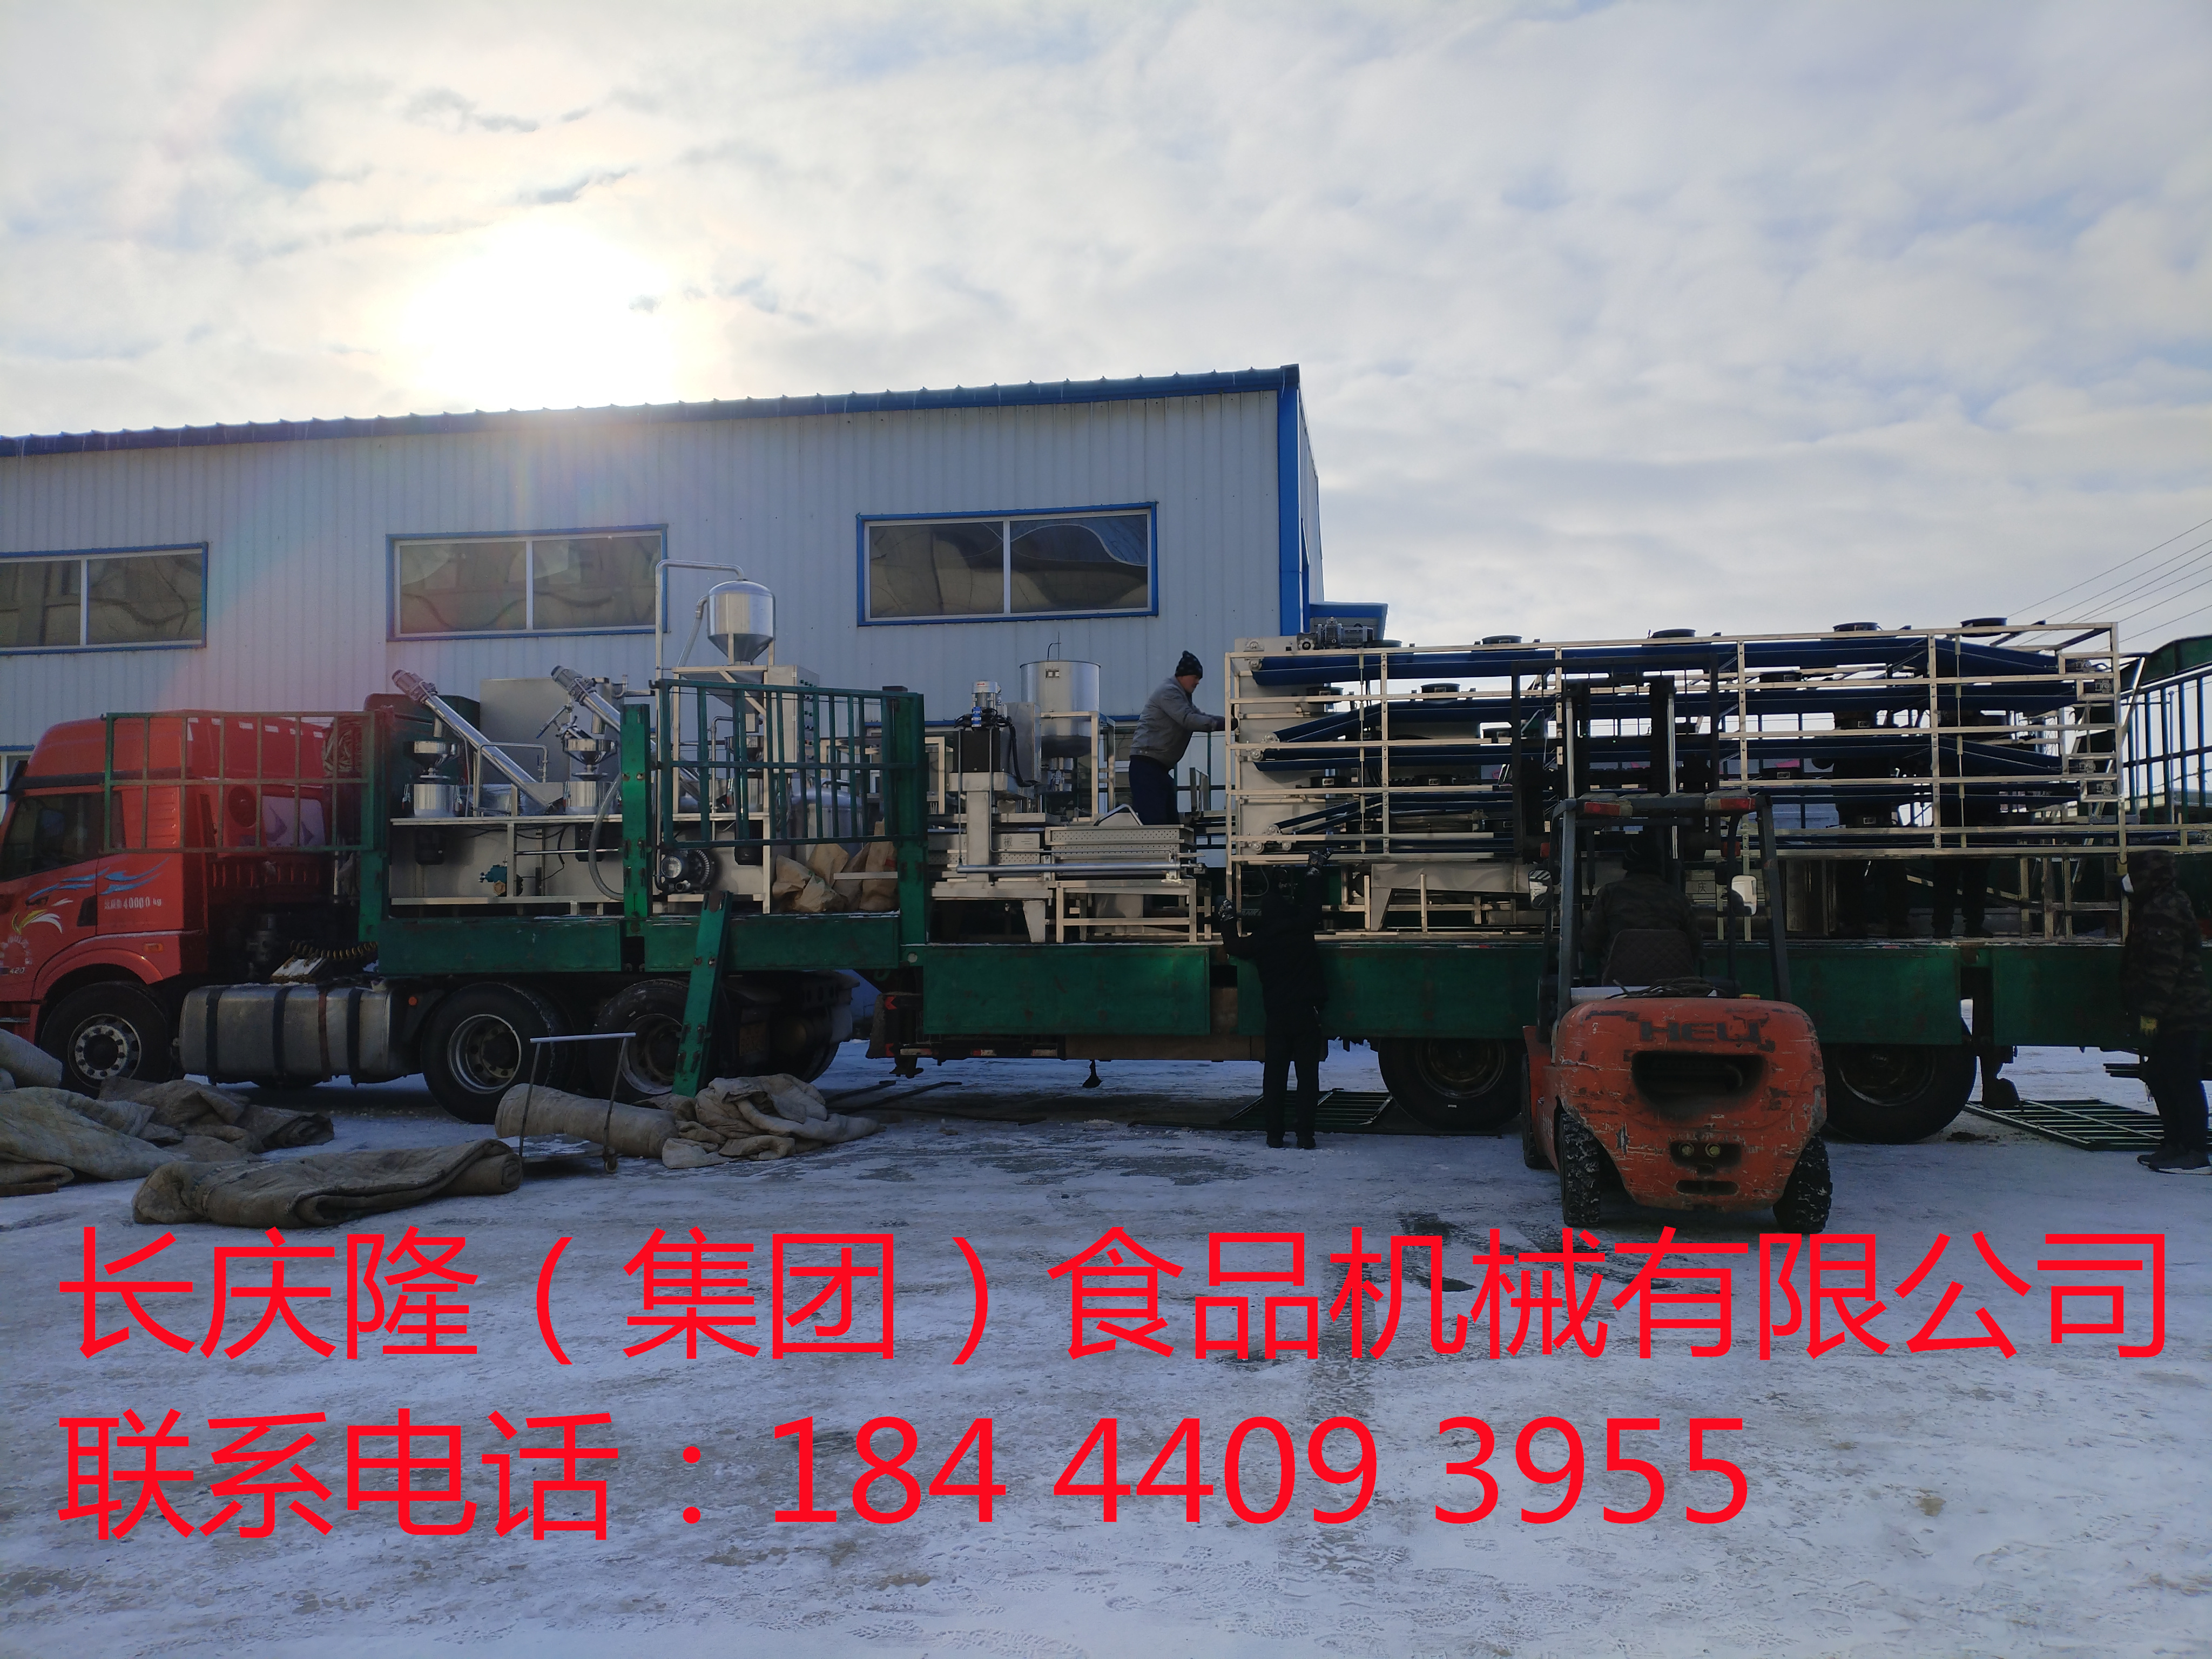 河北滦县客户订购的大型干豆腐机生产线马上装车 (1)_副本.jpg